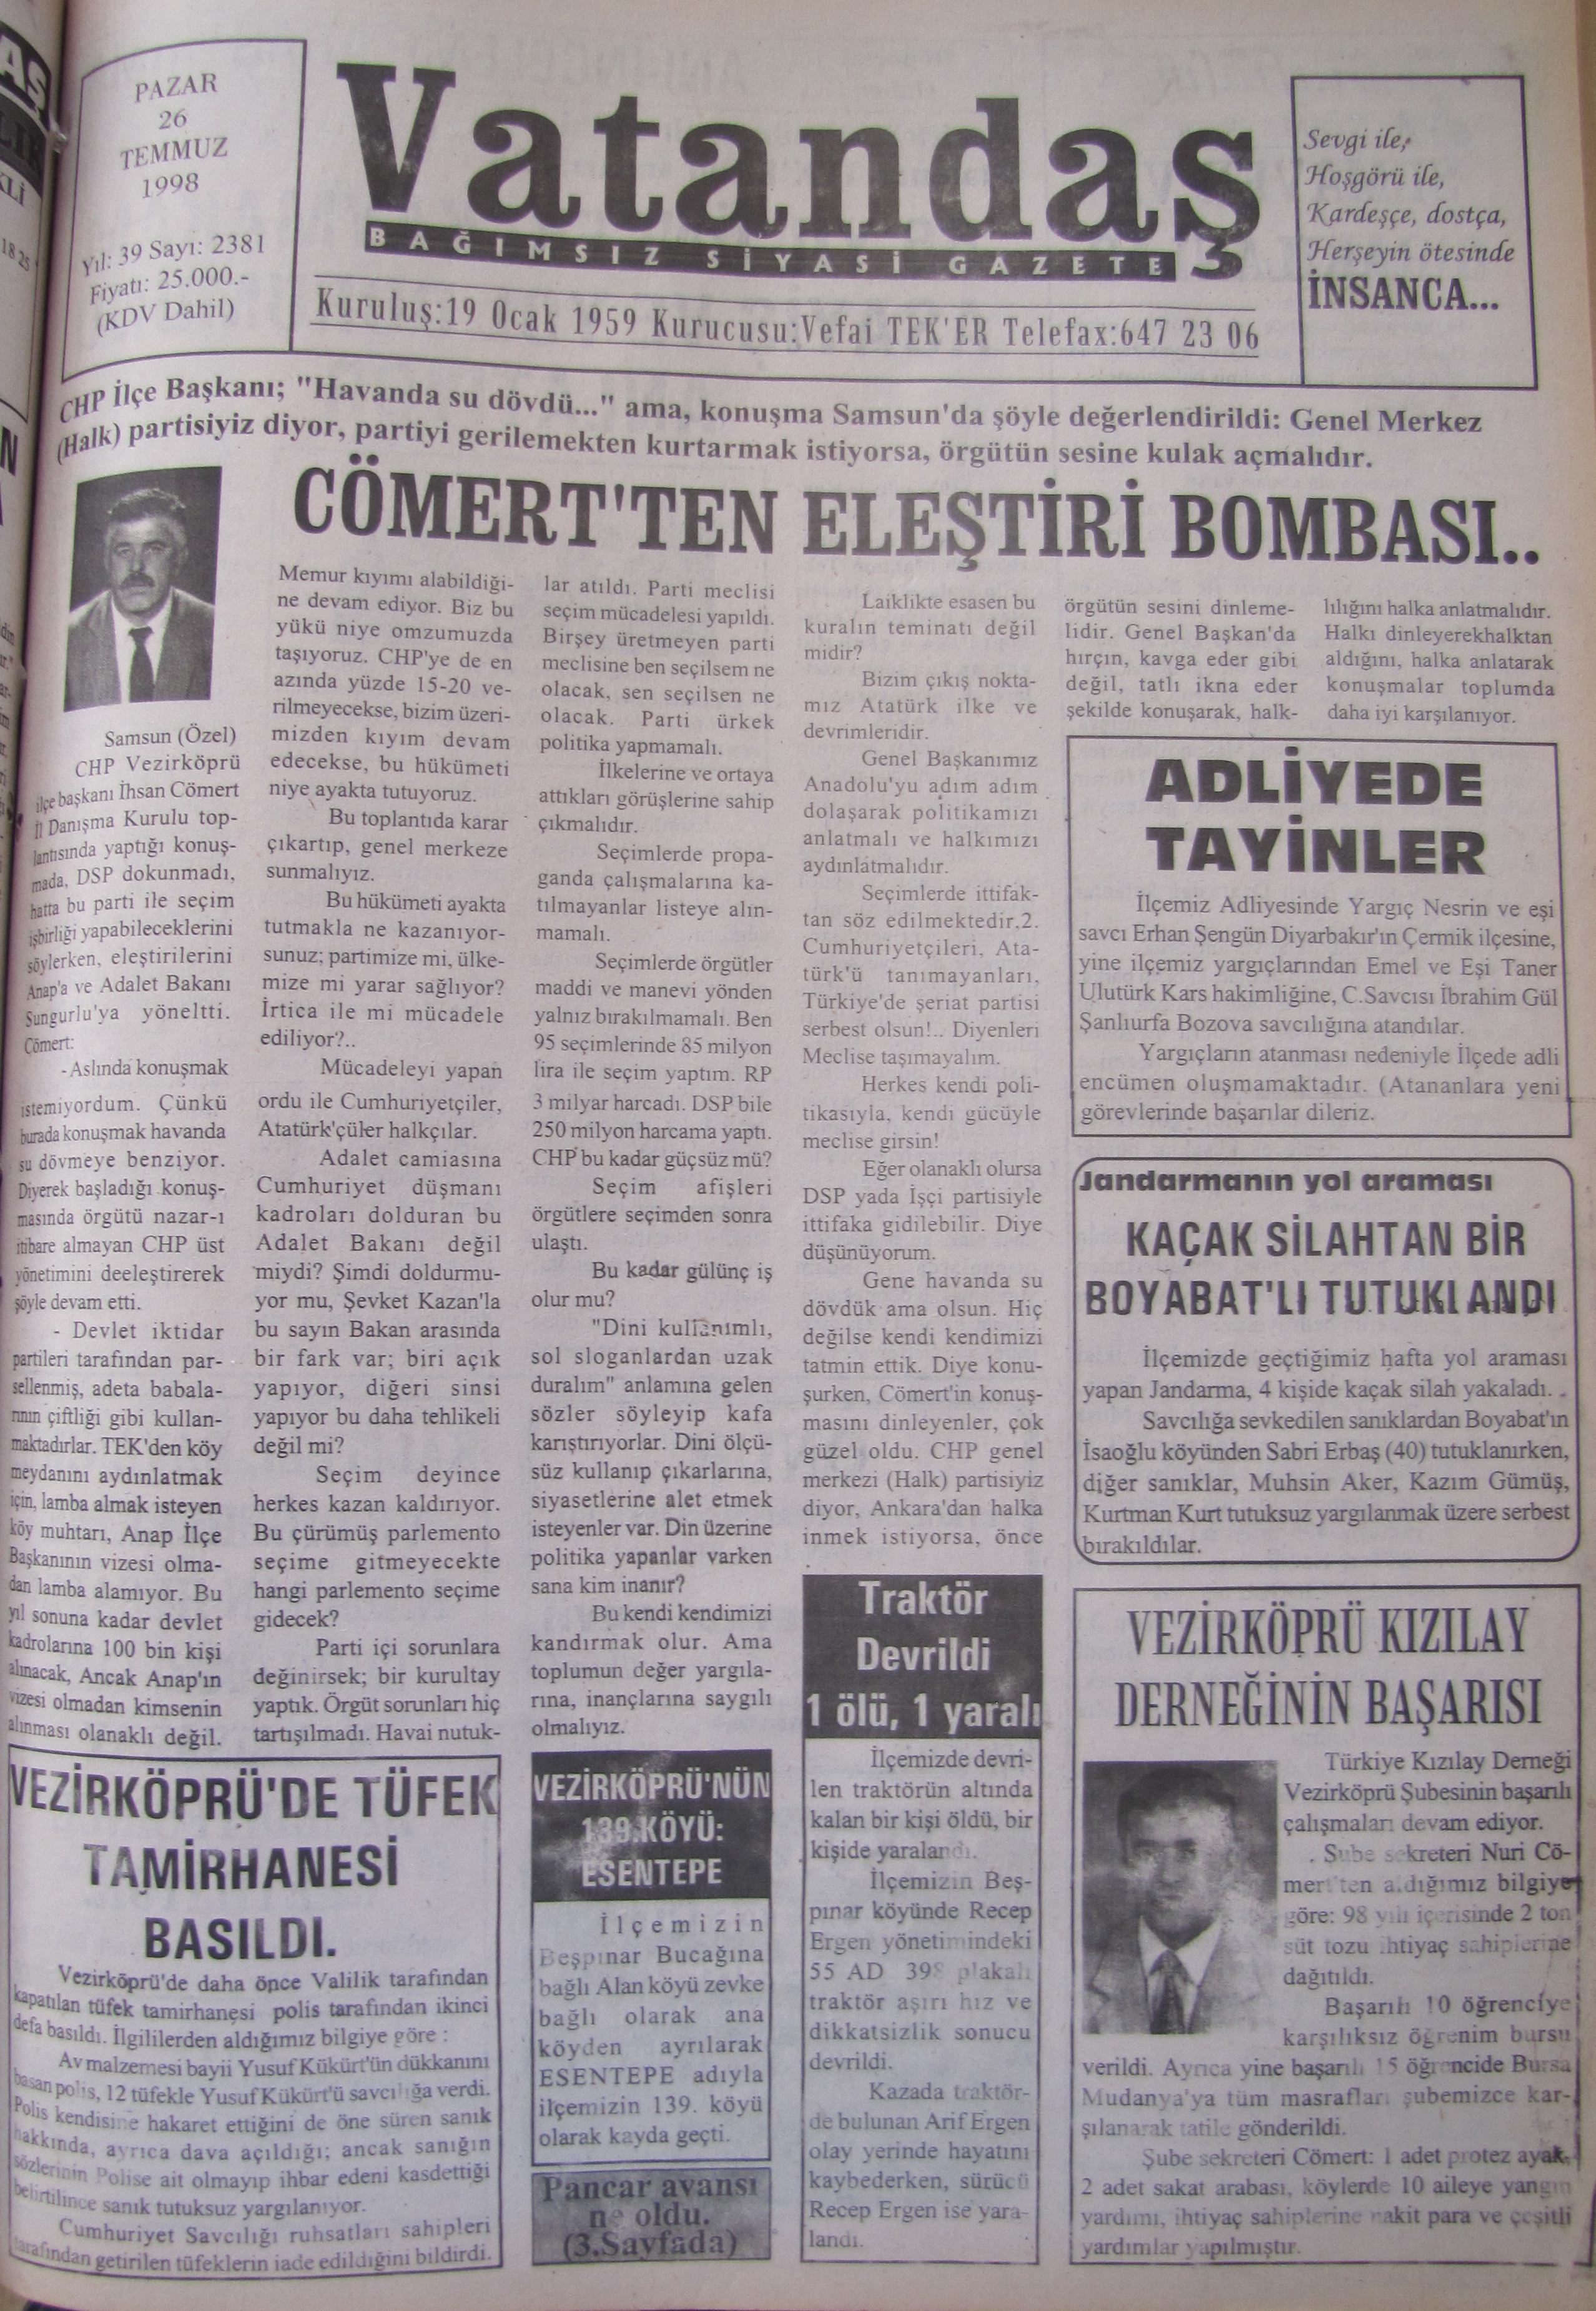 Cömert’ten Eleştiri Bombası.. 26 Temmuz 1998  Pazar